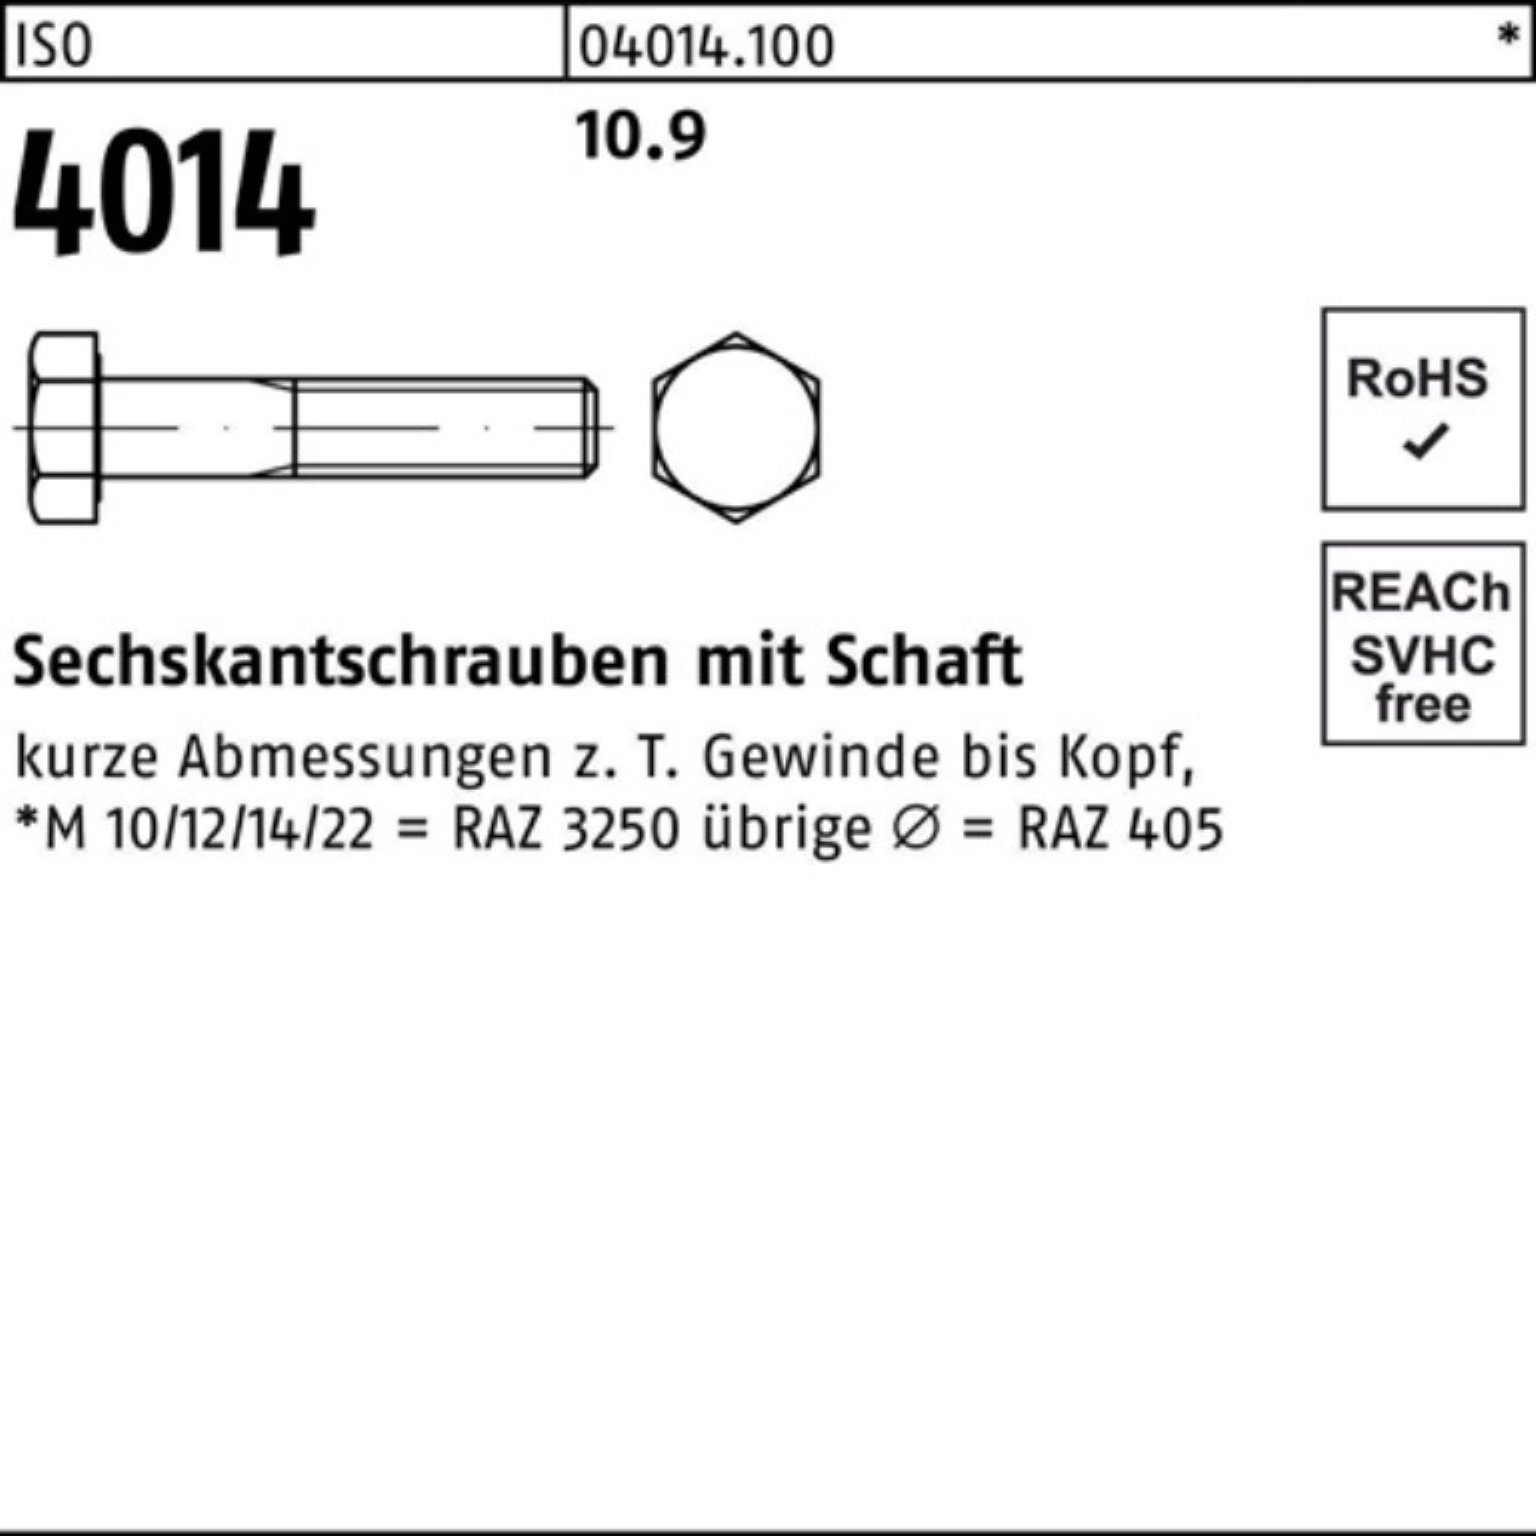 Sechskantschraube 10.9 IS M30x 1 4014 ISO 110 Schaft Sechskantschraube Stück Bufab 100er Pack